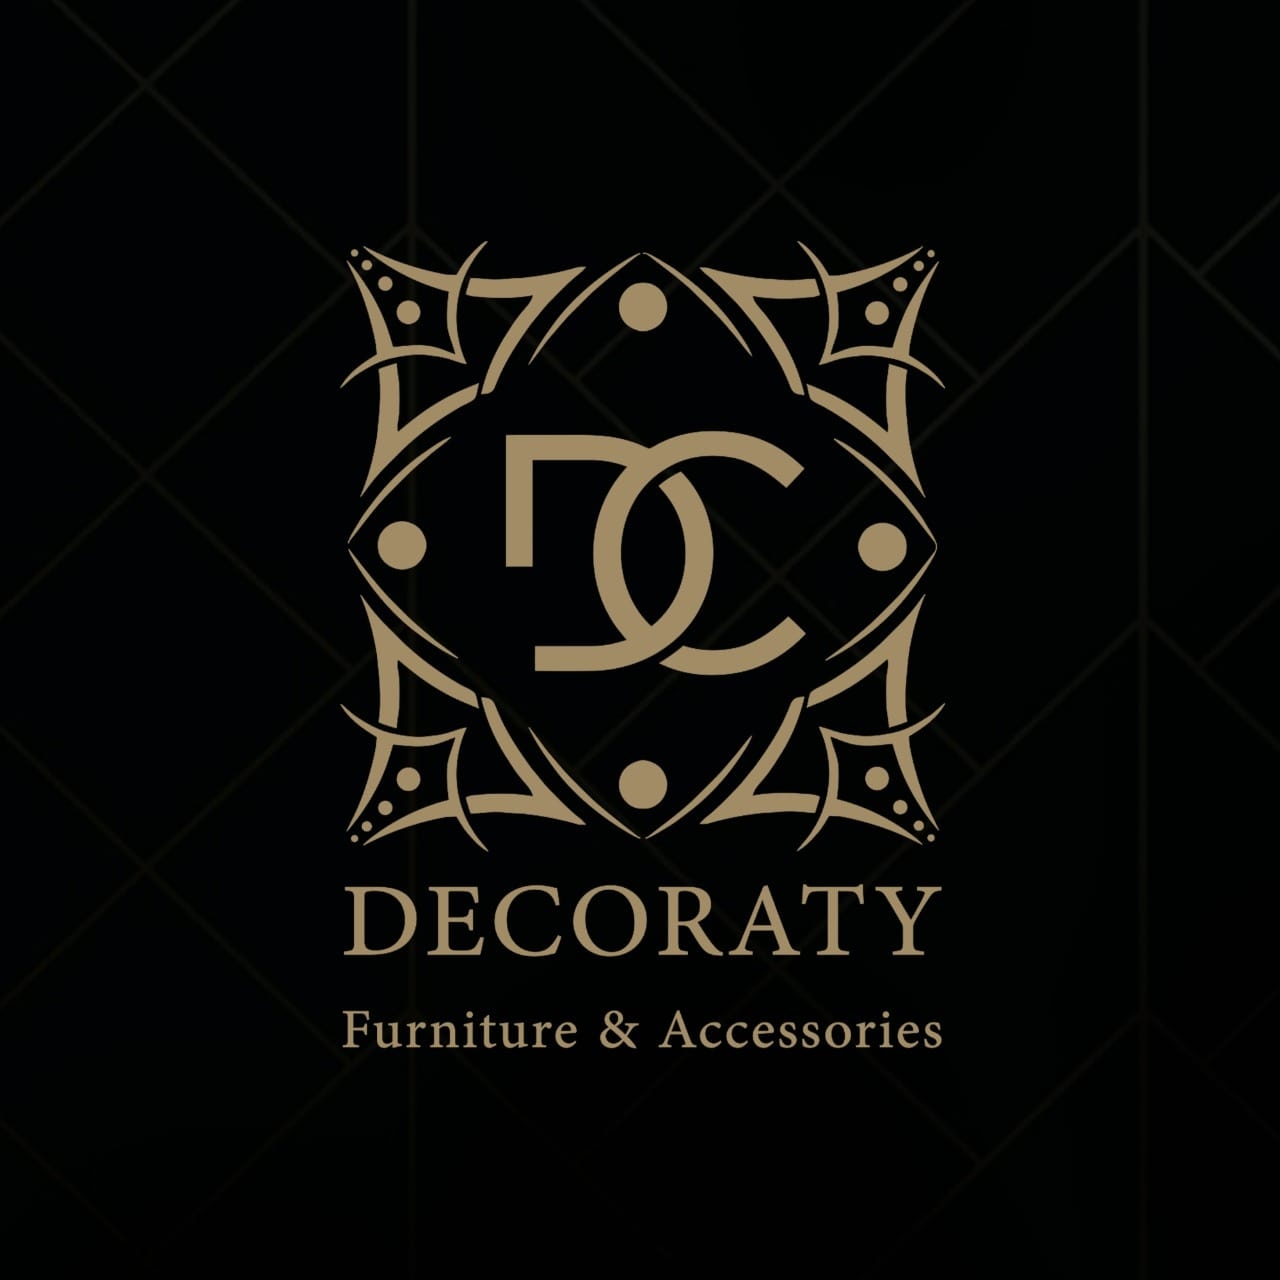 Decoraty - logo